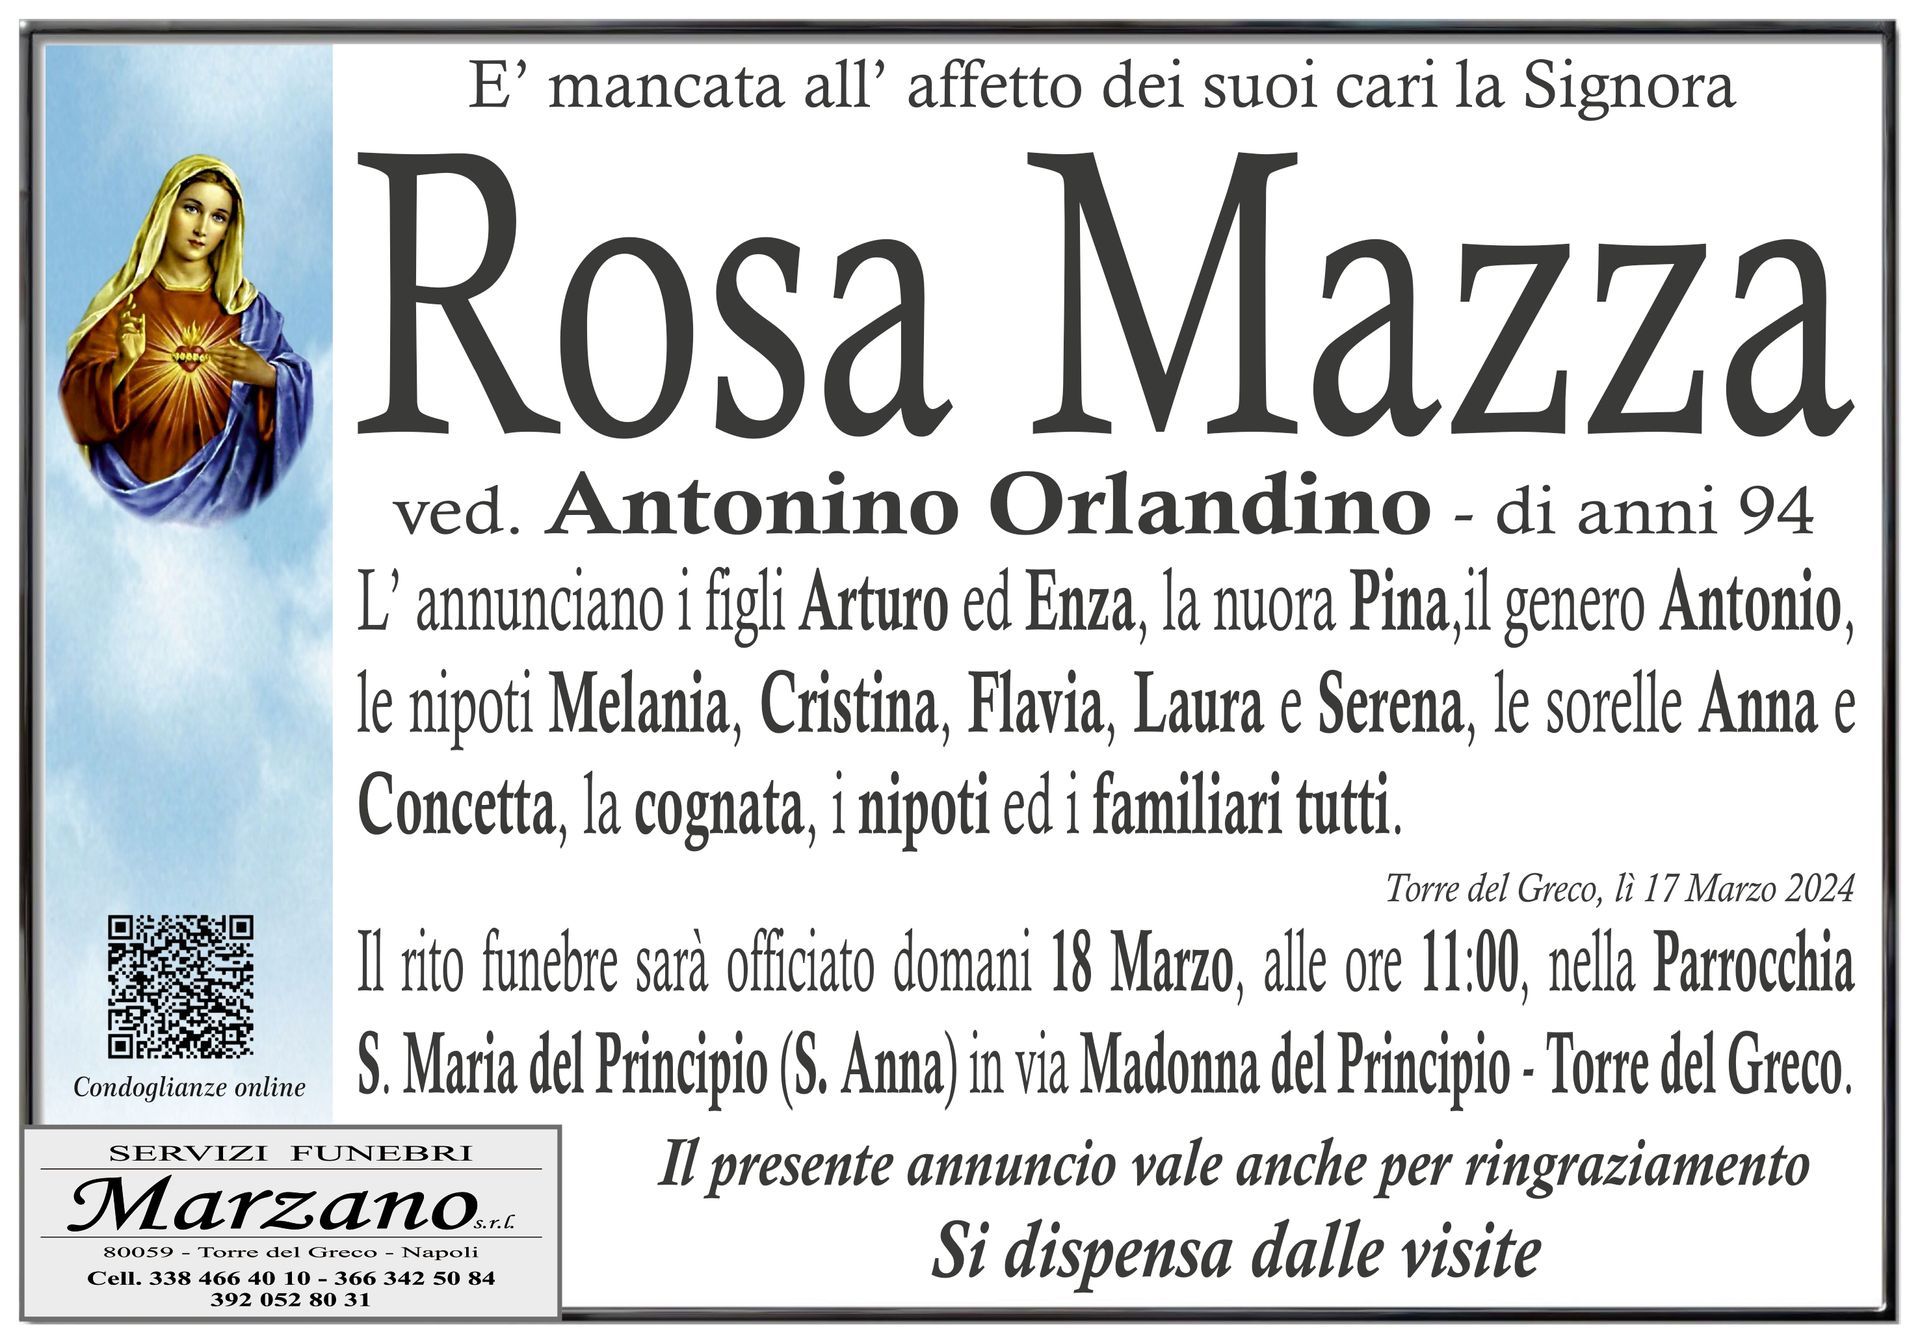 Rosa Mazza